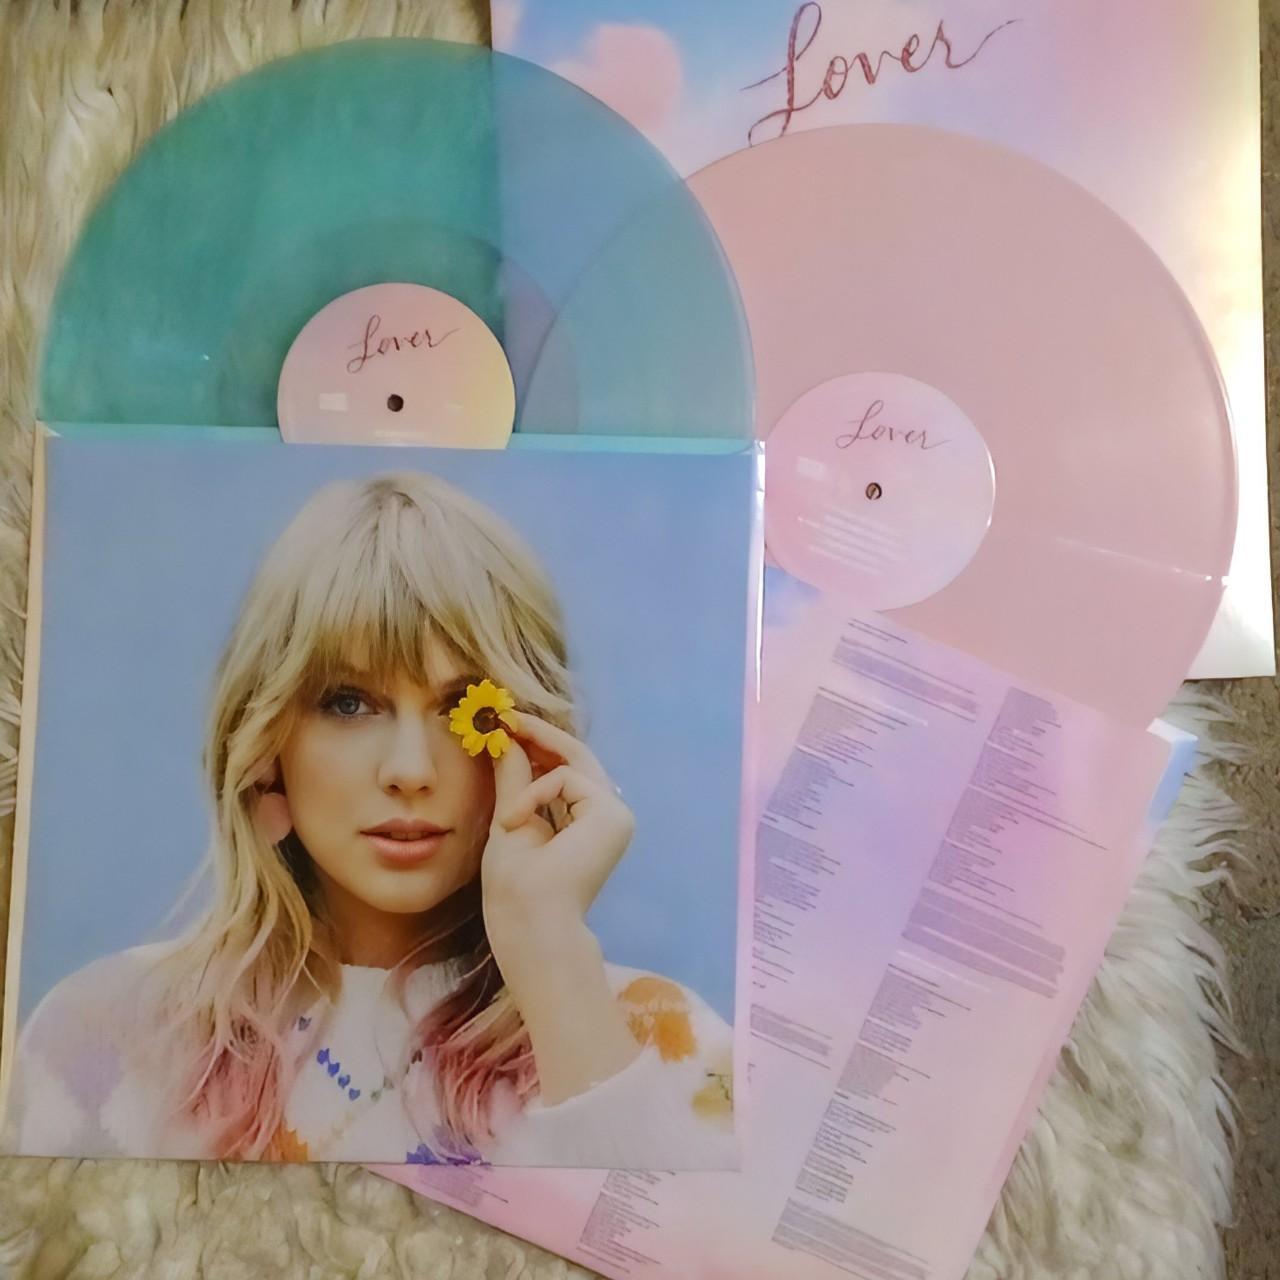 Taylor Swift: Lover Vinyl 2LP —